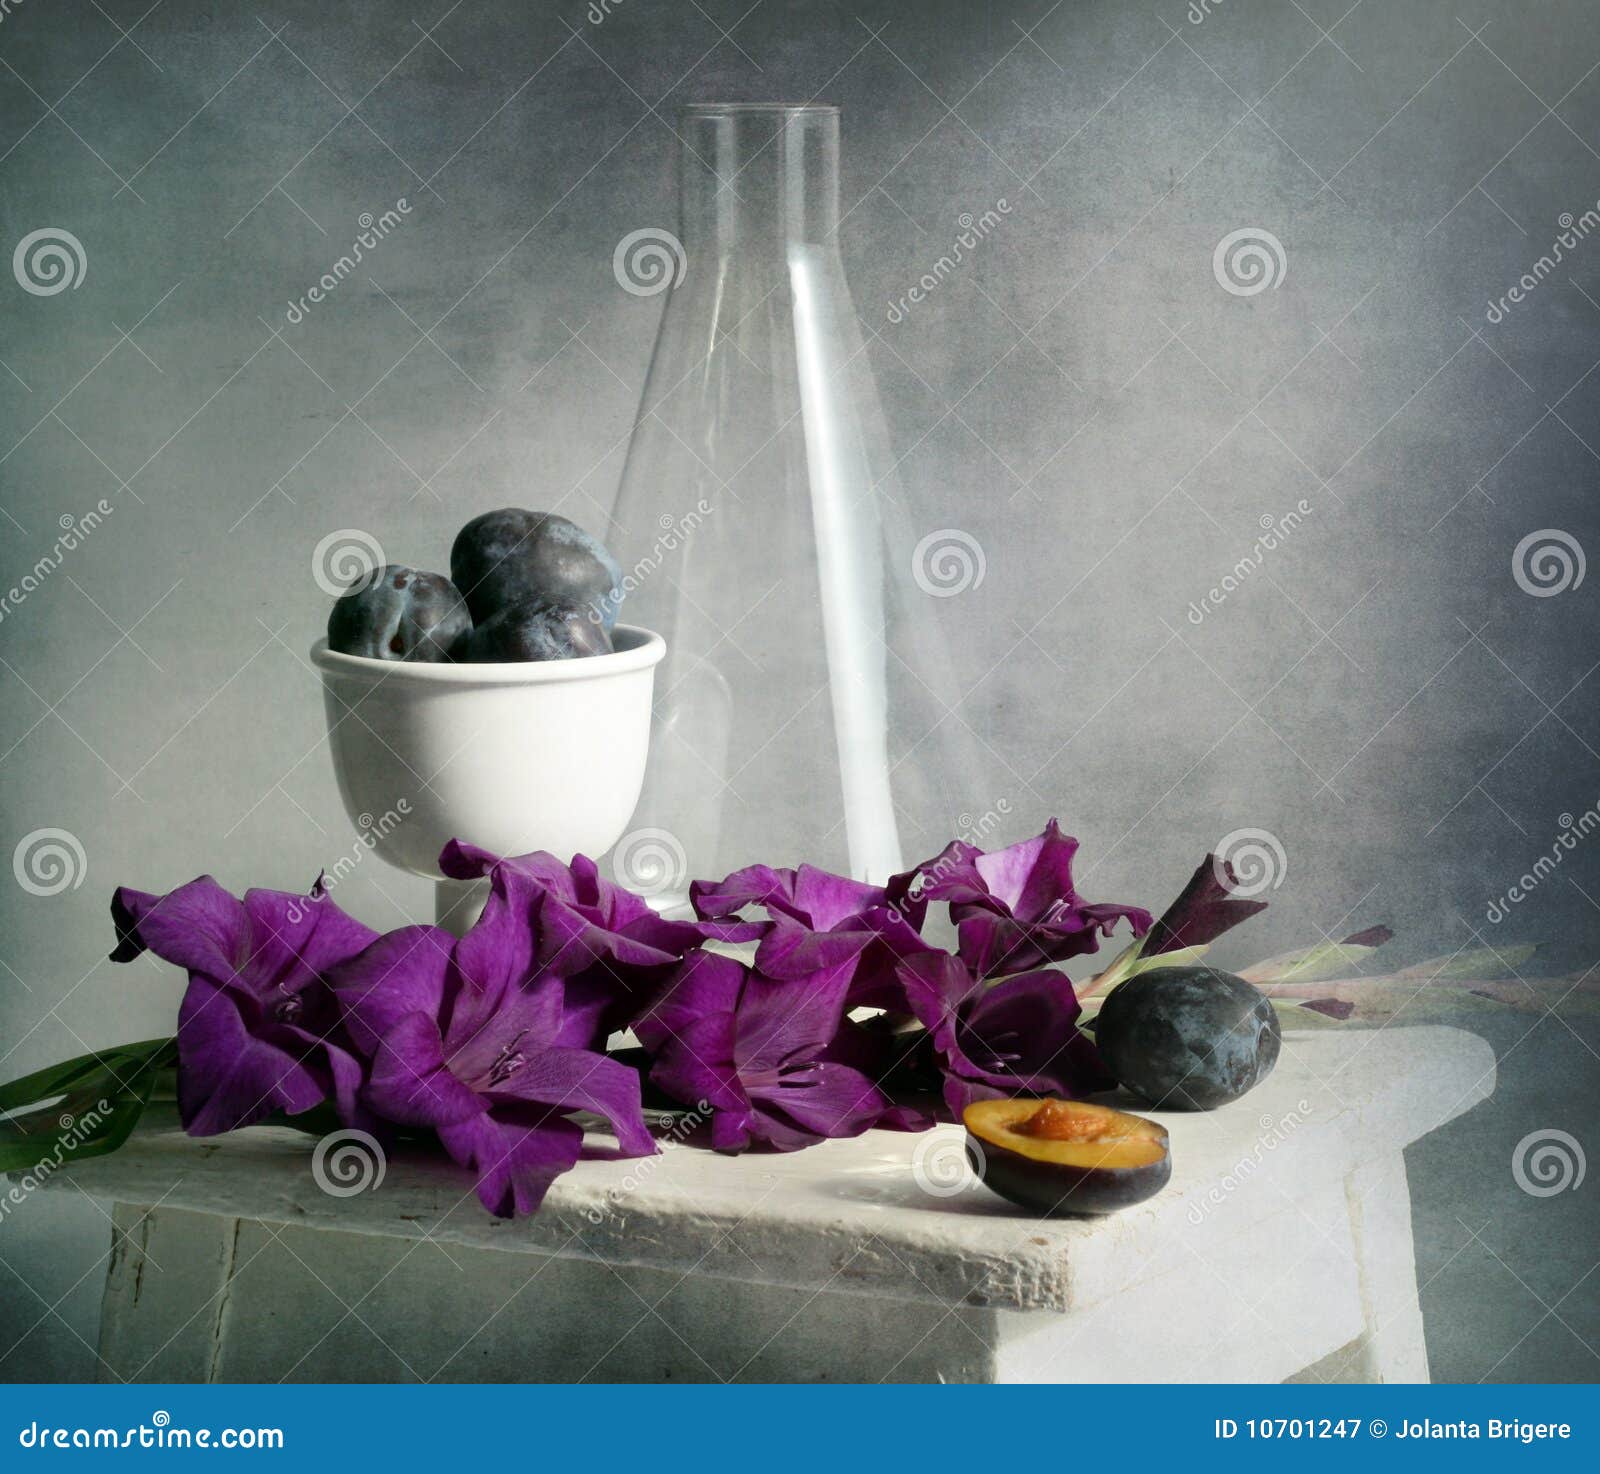 Gladiolus und Pflaumen. Gladiolus purpurroter Dunst, Pflaumen und Prüfungglas auf dem alten Schemelamerikaner